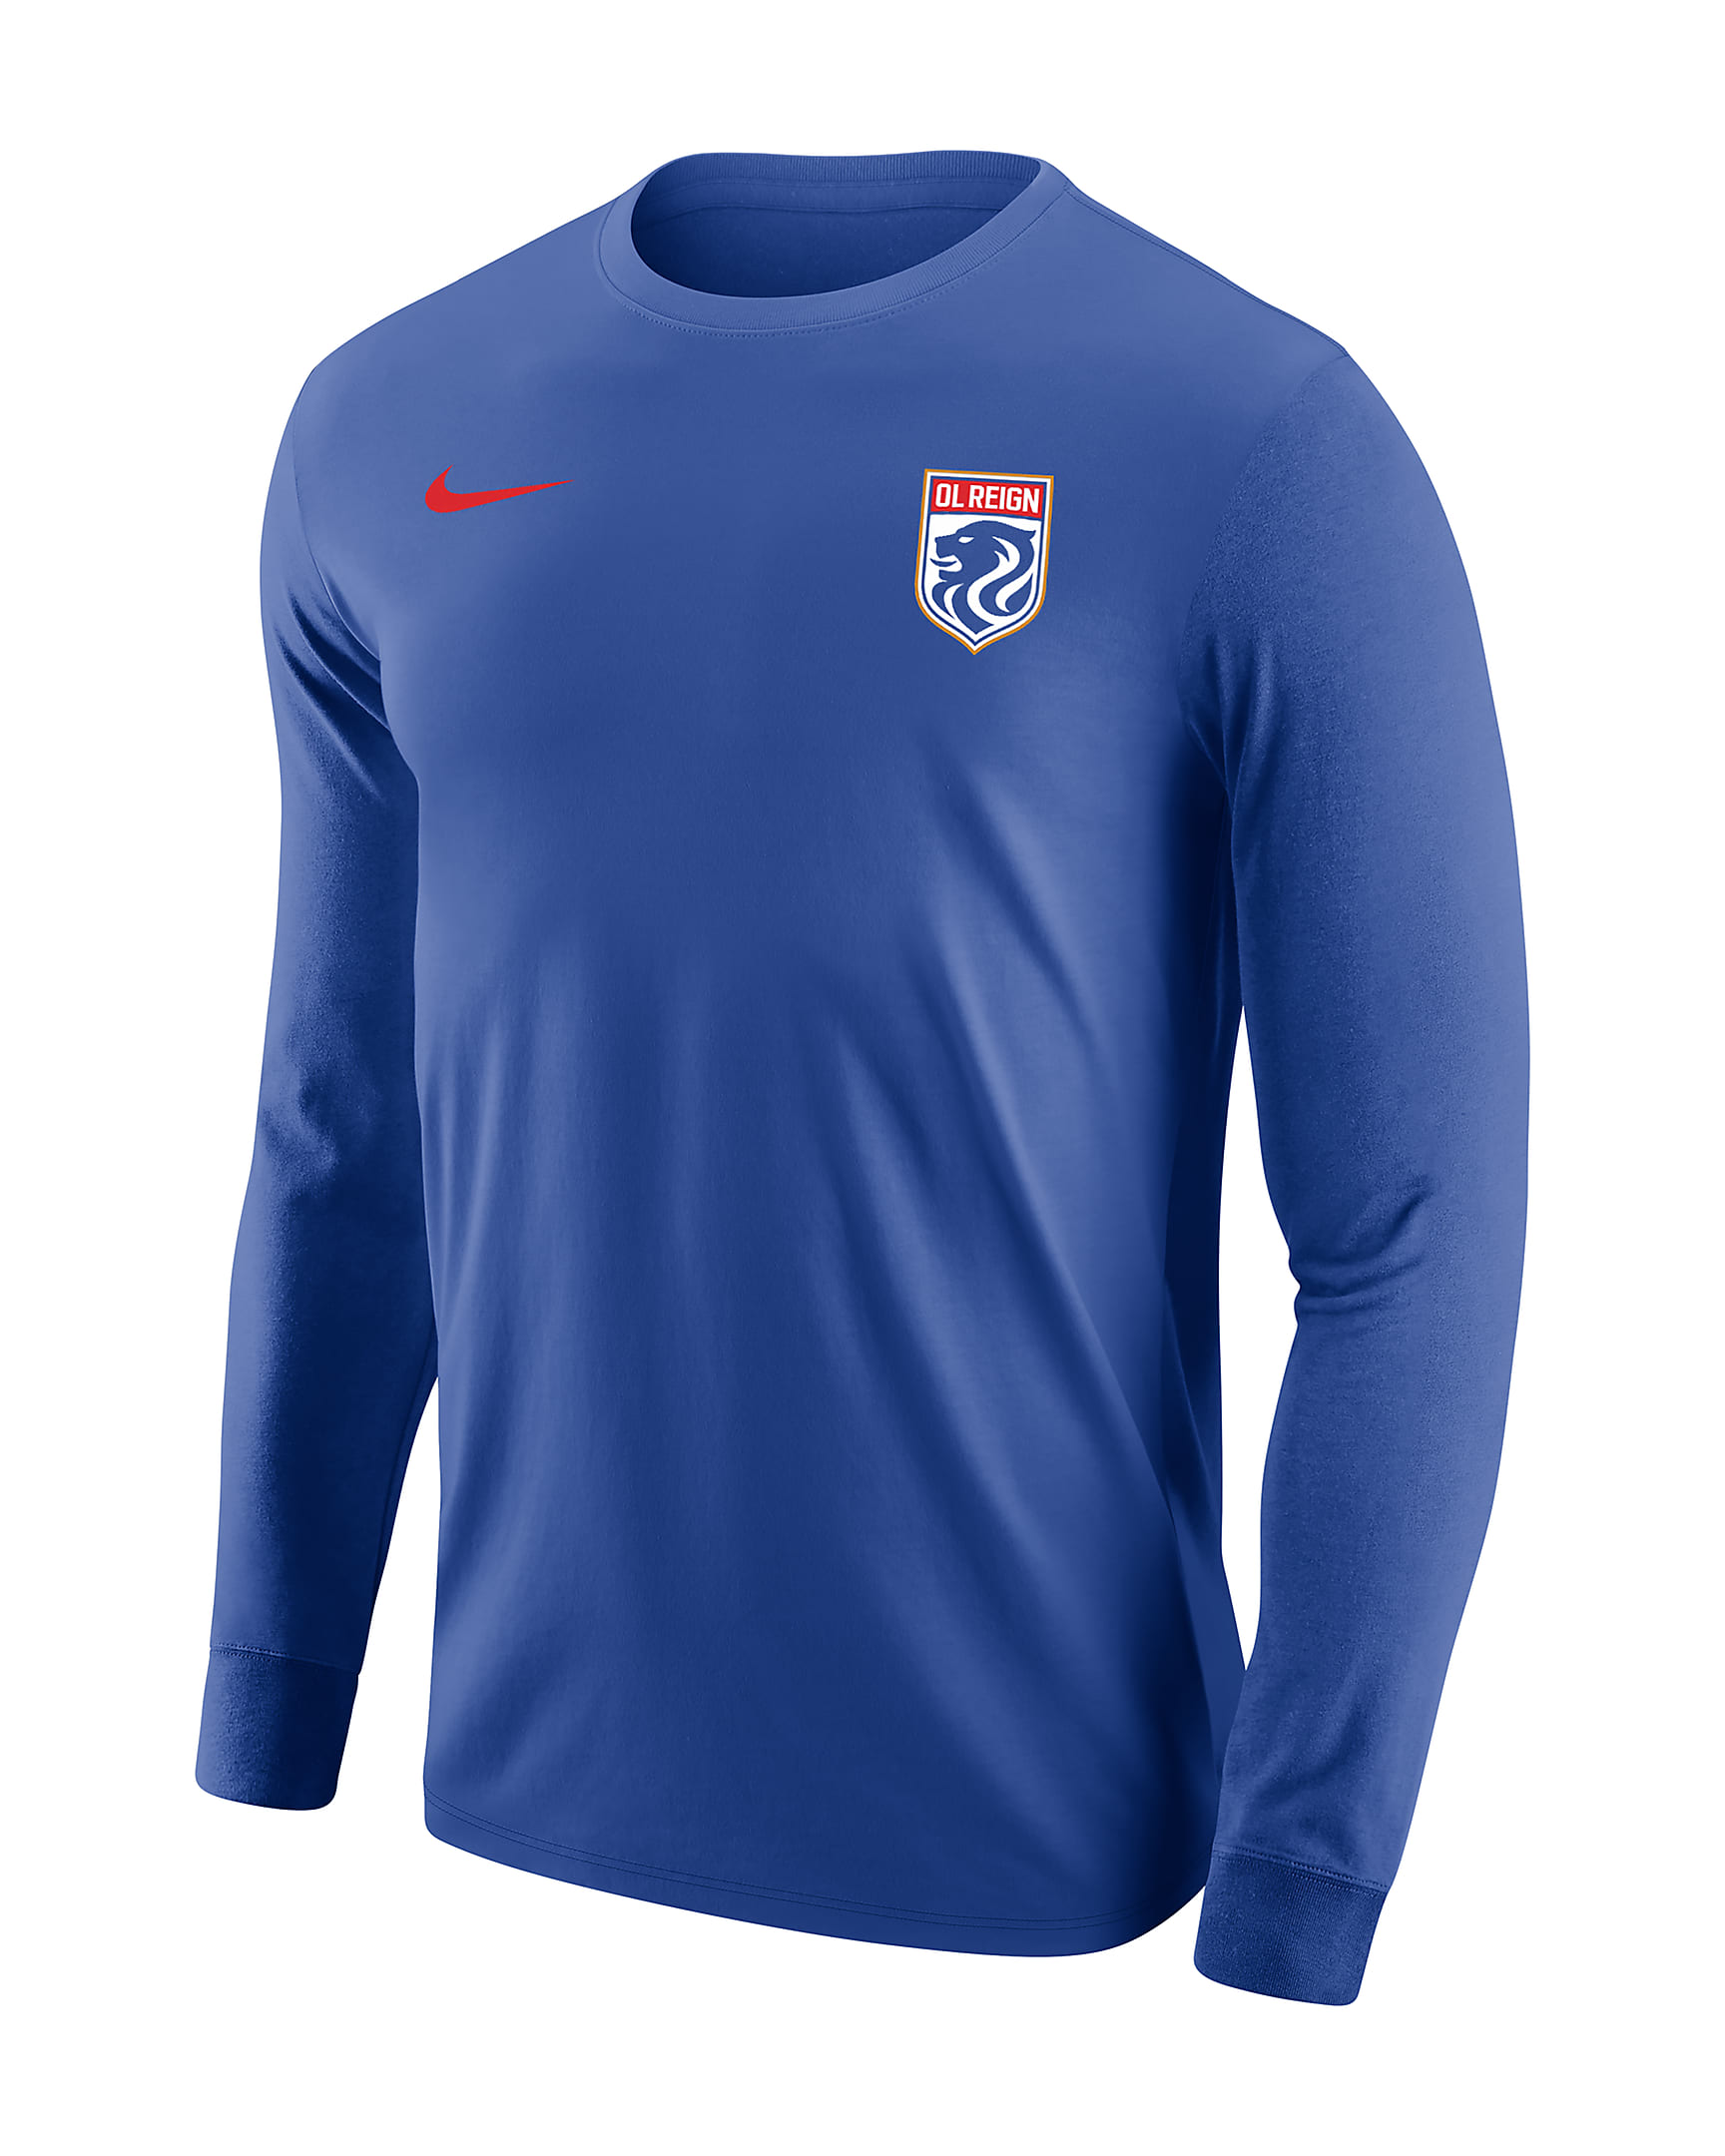 OL Reign Men's Nike Soccer Long-Sleeve T-Shirt. Nike.com